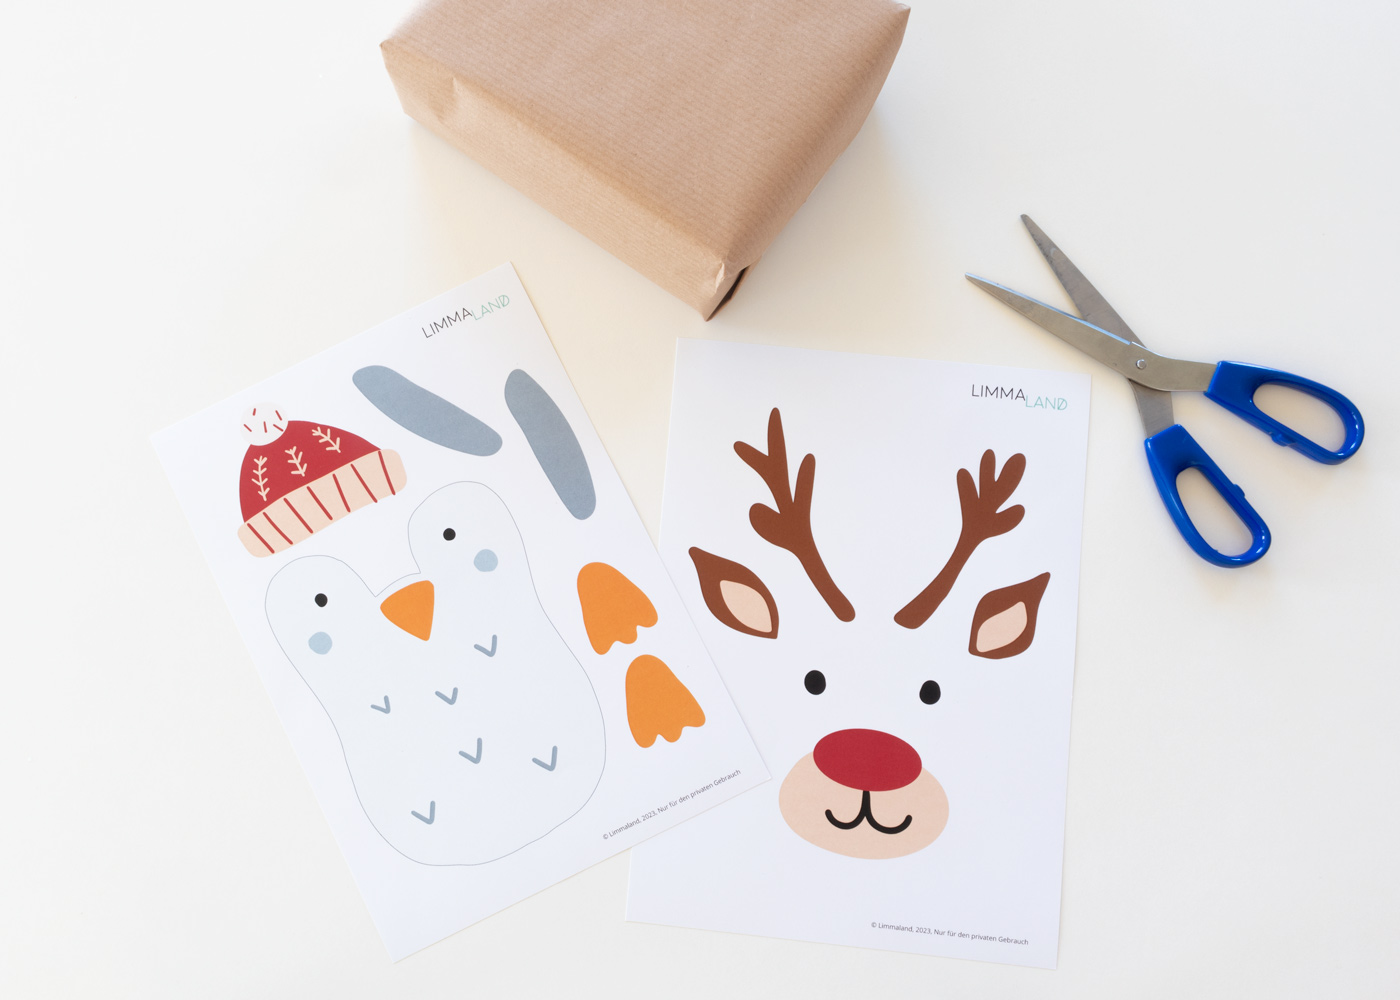 Creative craft ideas for the Christmas season